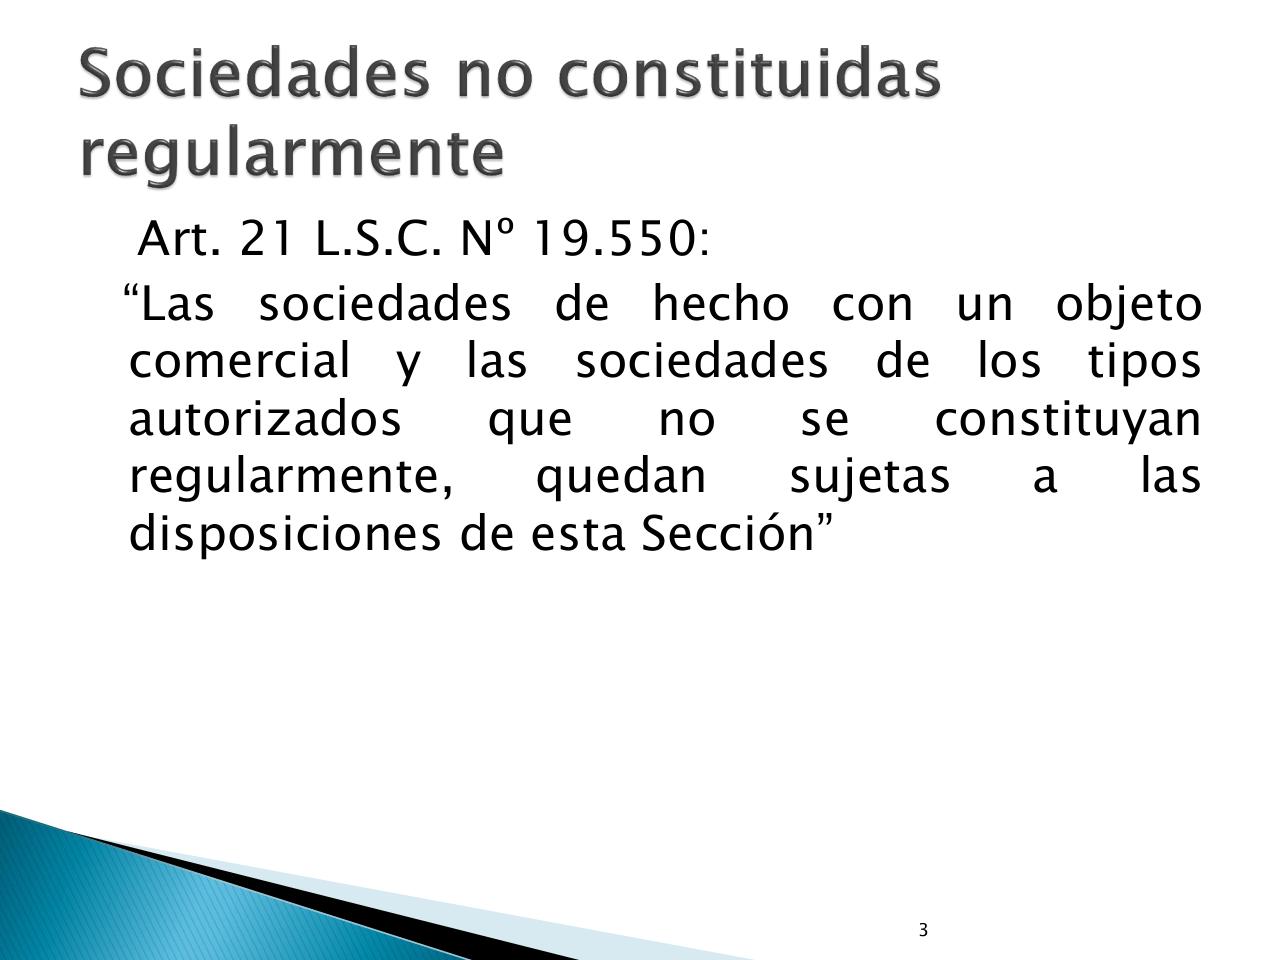 Vista previa del archivo PDF presentacion-seminario-sociedades-irregulares.pdf